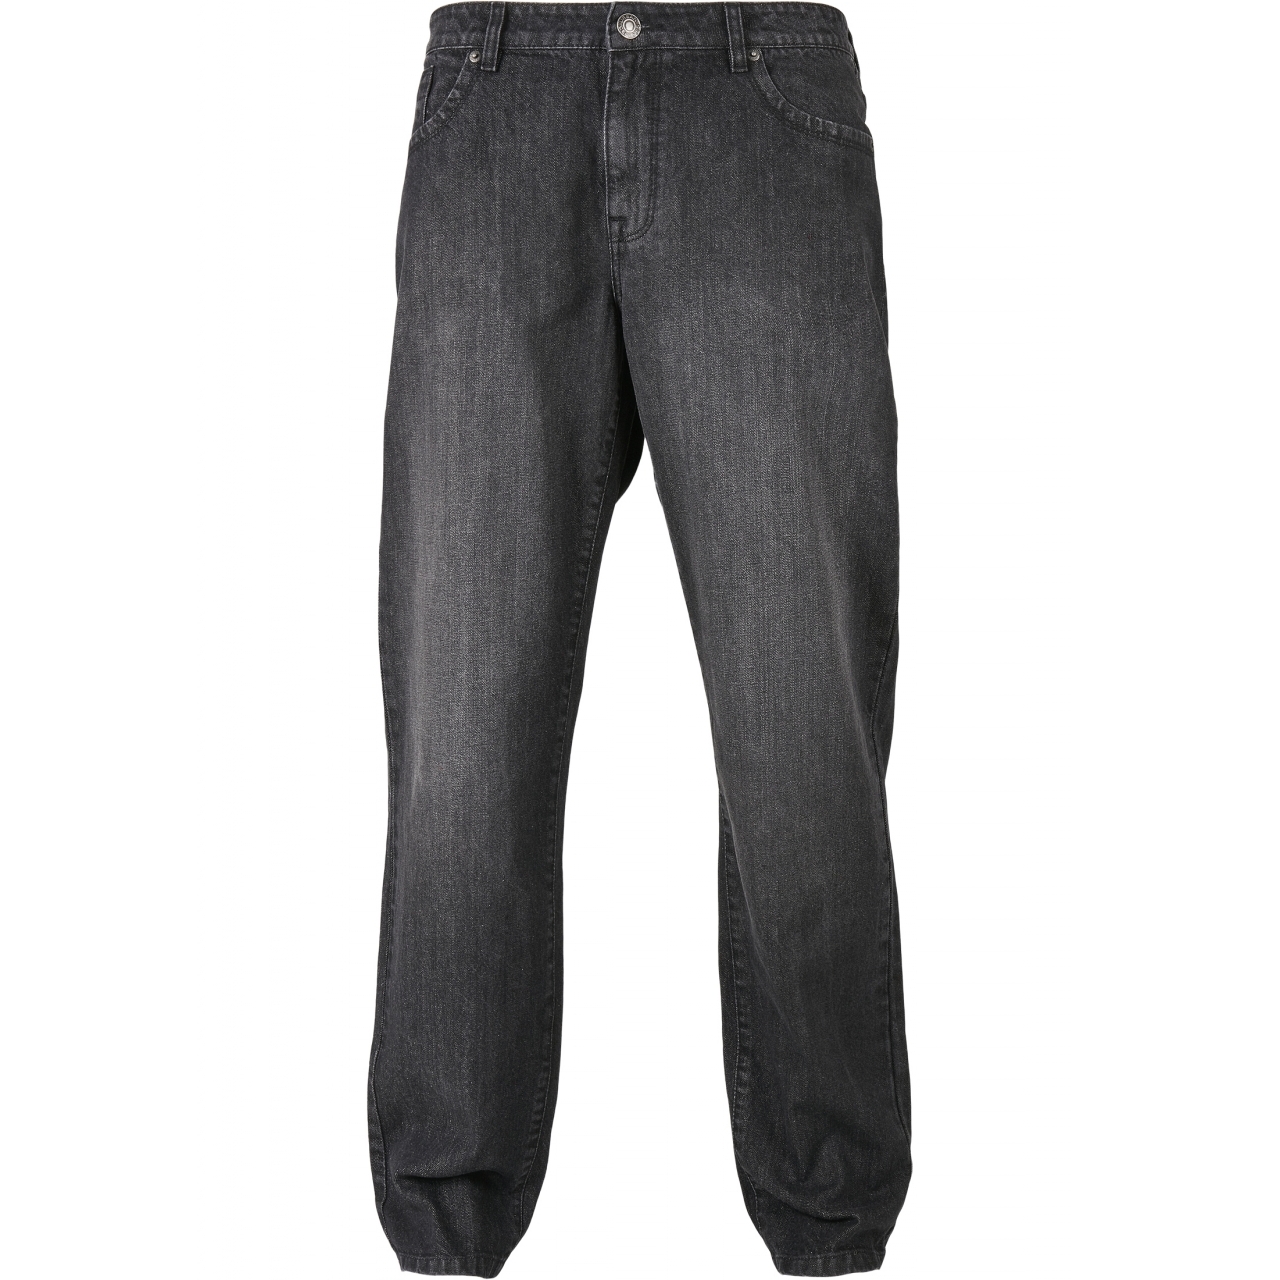 Džíny Urban Classics Loose Fit Jeans - černé, 29/32